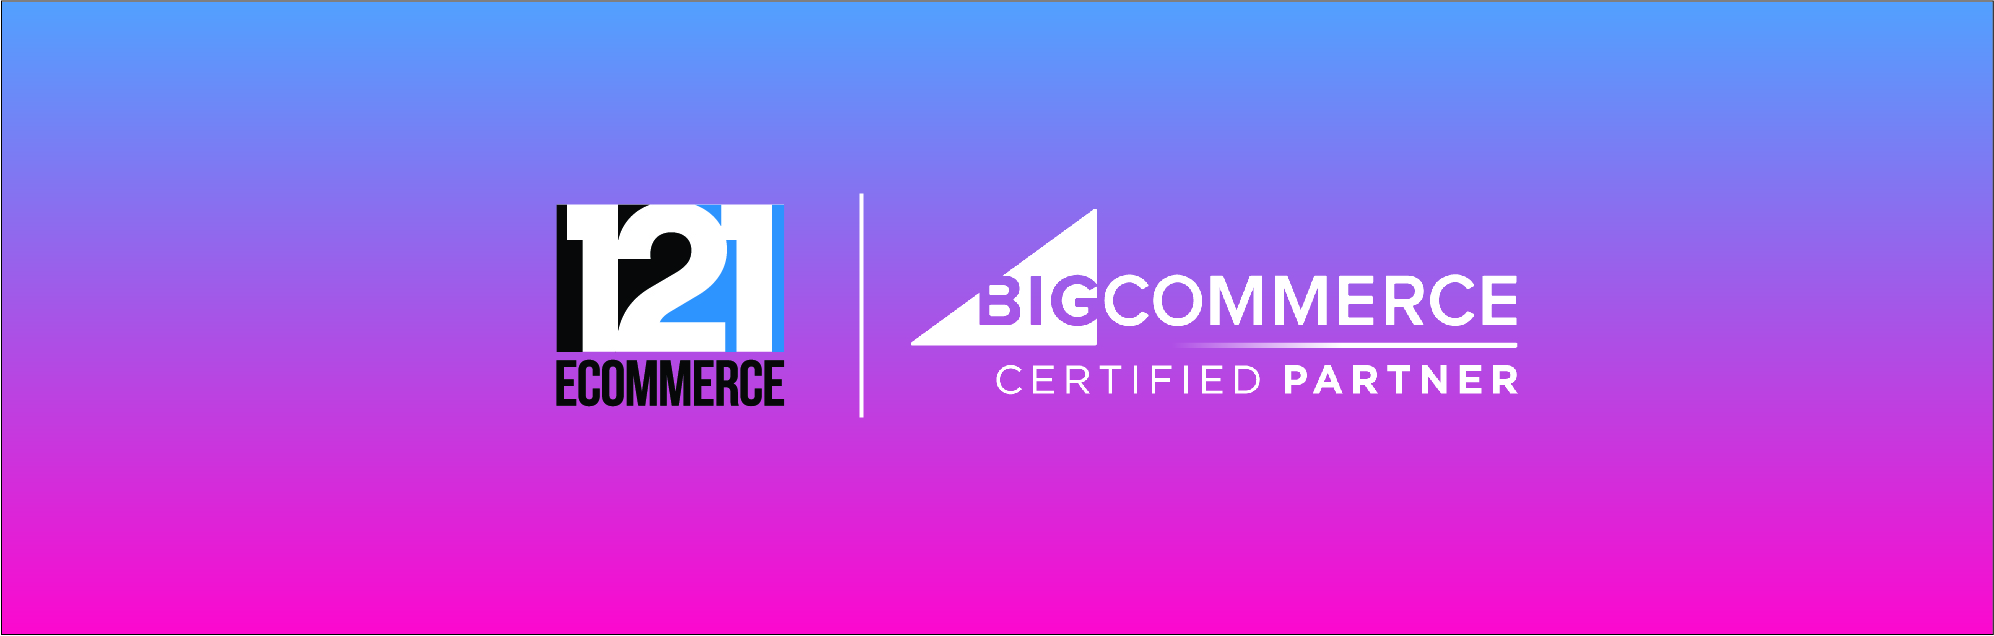 121eCommerce Joins BigCommerce Agency Partner Program